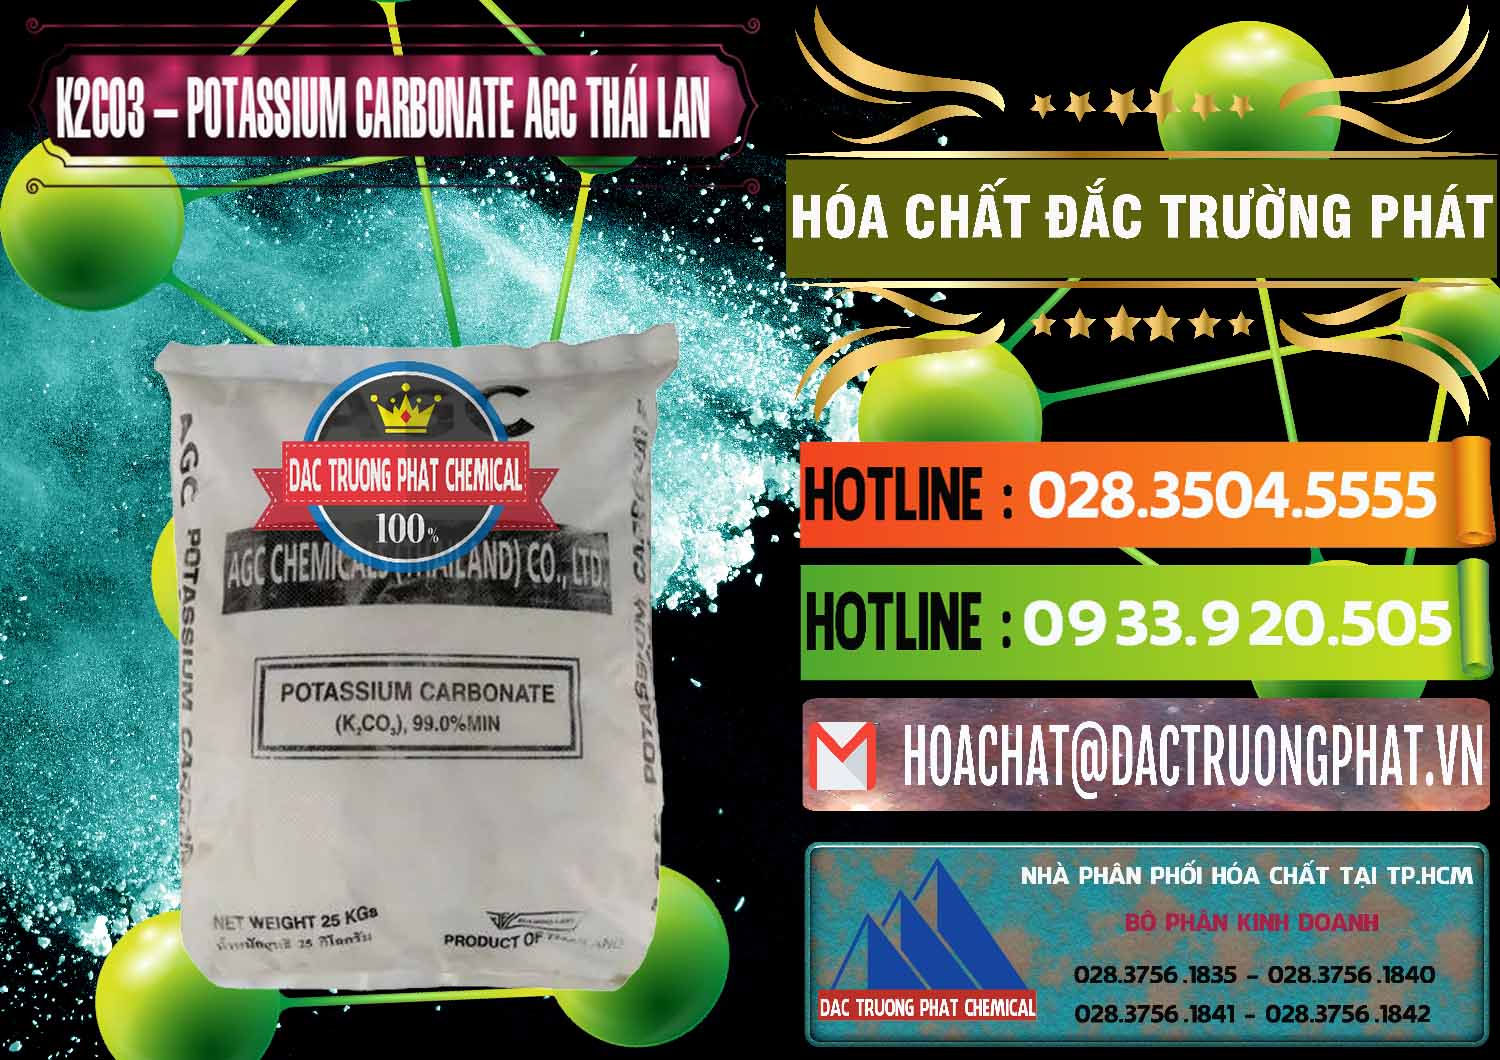 Cty chuyên nhập khẩu & bán K2Co3 – Potassium Carbonate AGC Thái Lan Thailand - 0471 - Cty chuyên cung cấp & kinh doanh hóa chất tại TP.HCM - cungcaphoachat.com.vn